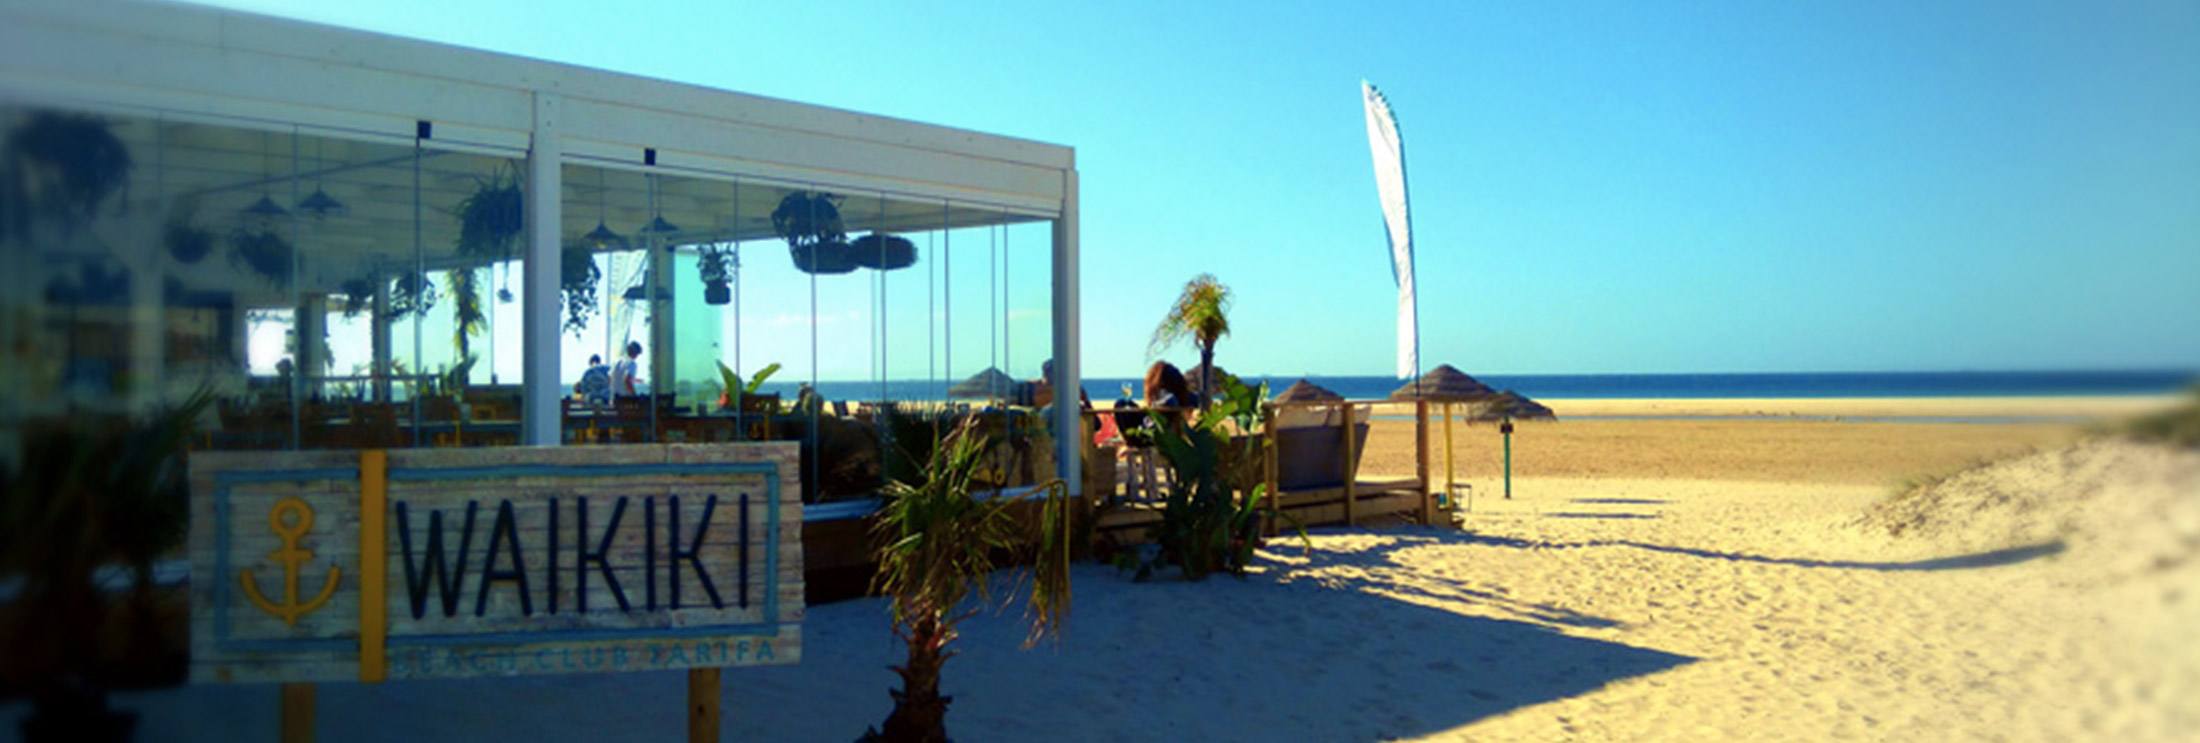 waikiki-beach-club-bar-tarifa-balneario-beach-Freeride Tarifa Kite School